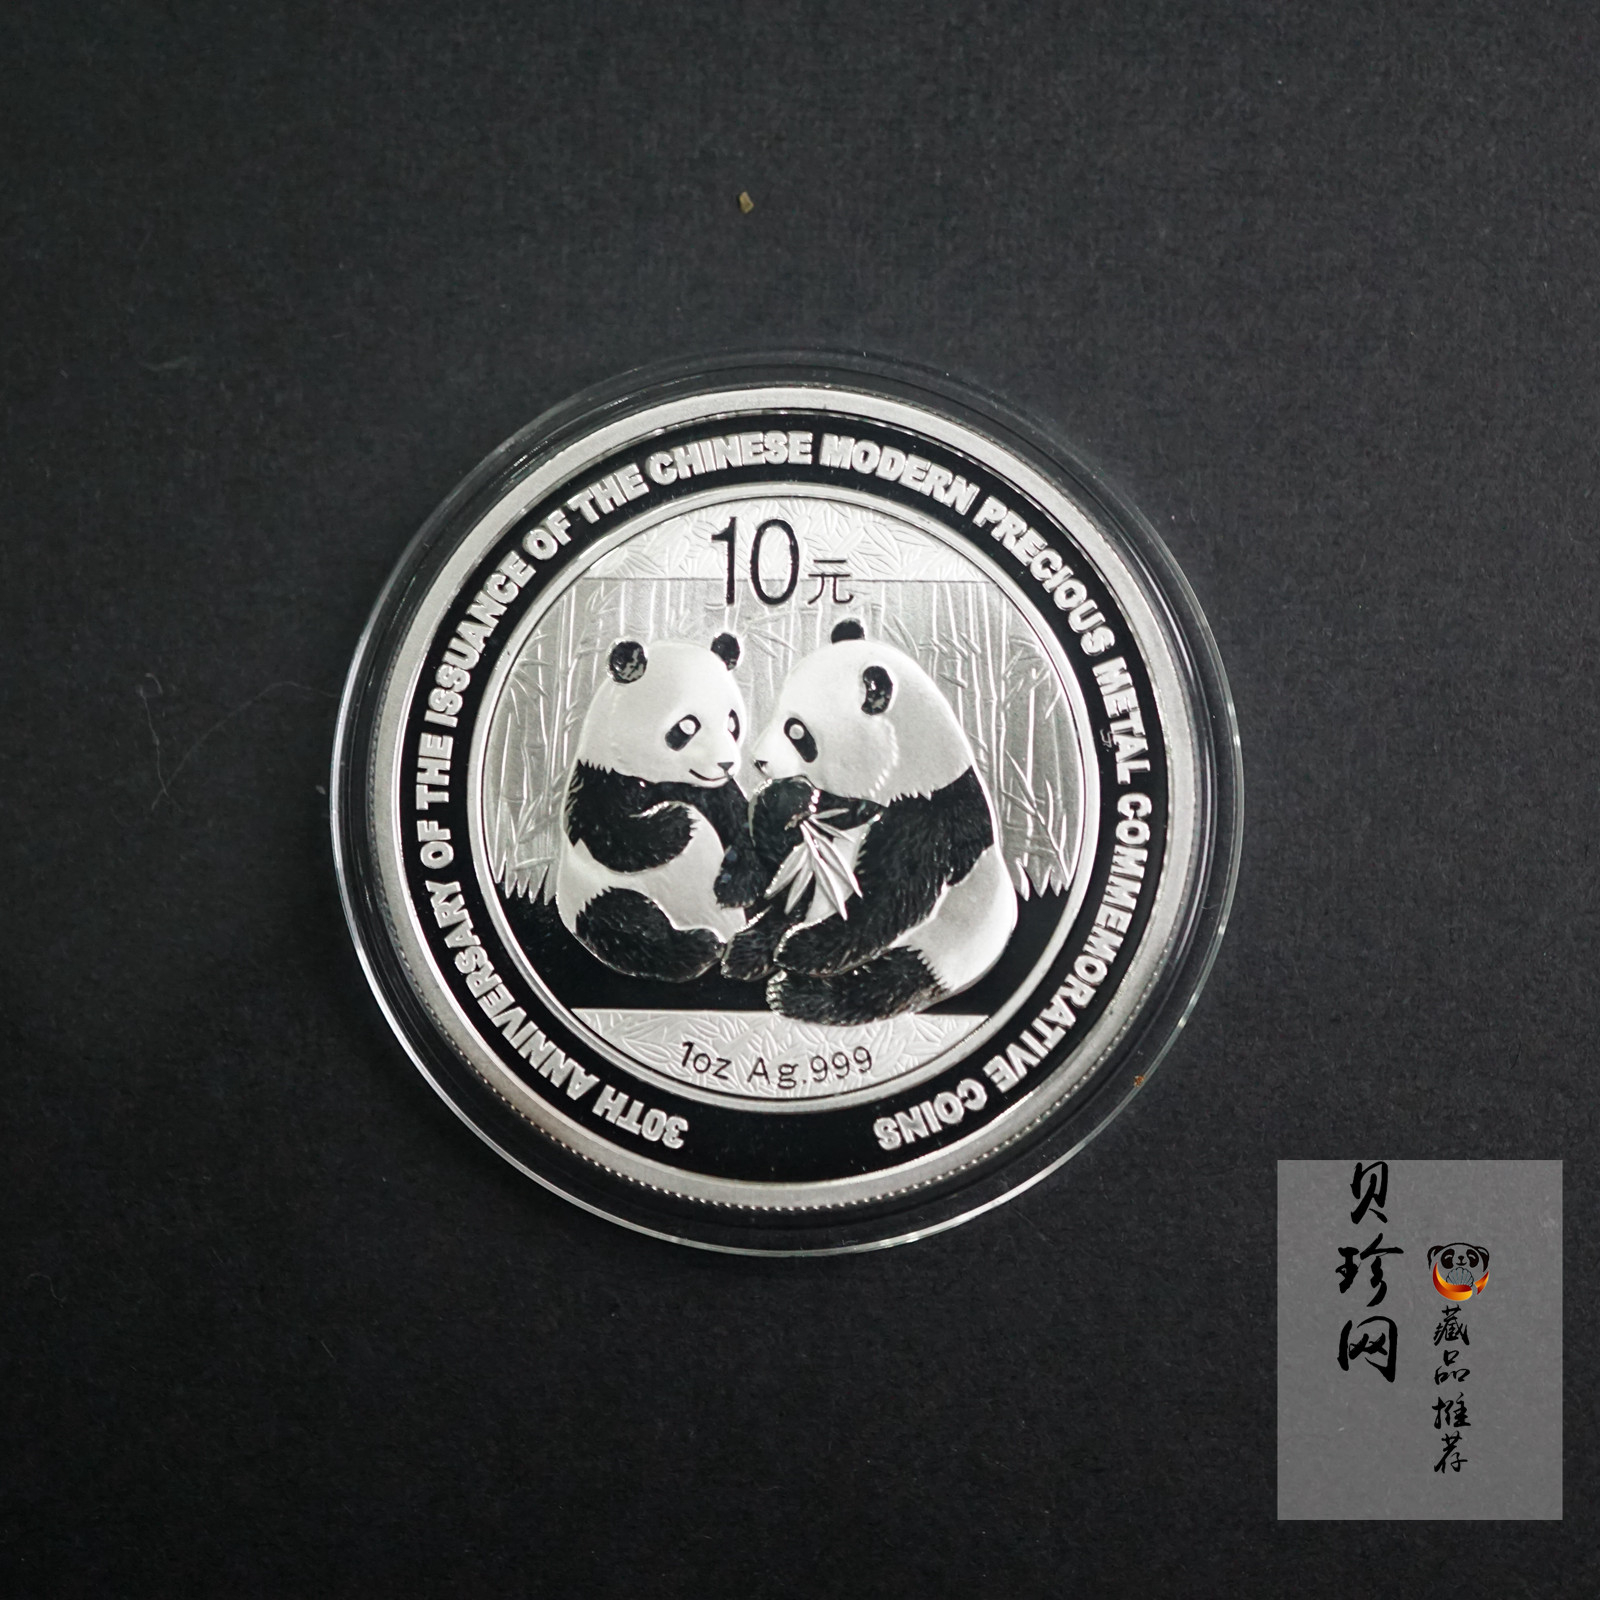 【090302】2009年中国现代贵金属纪念币发行30周年熊猫加字1盎司普制银币